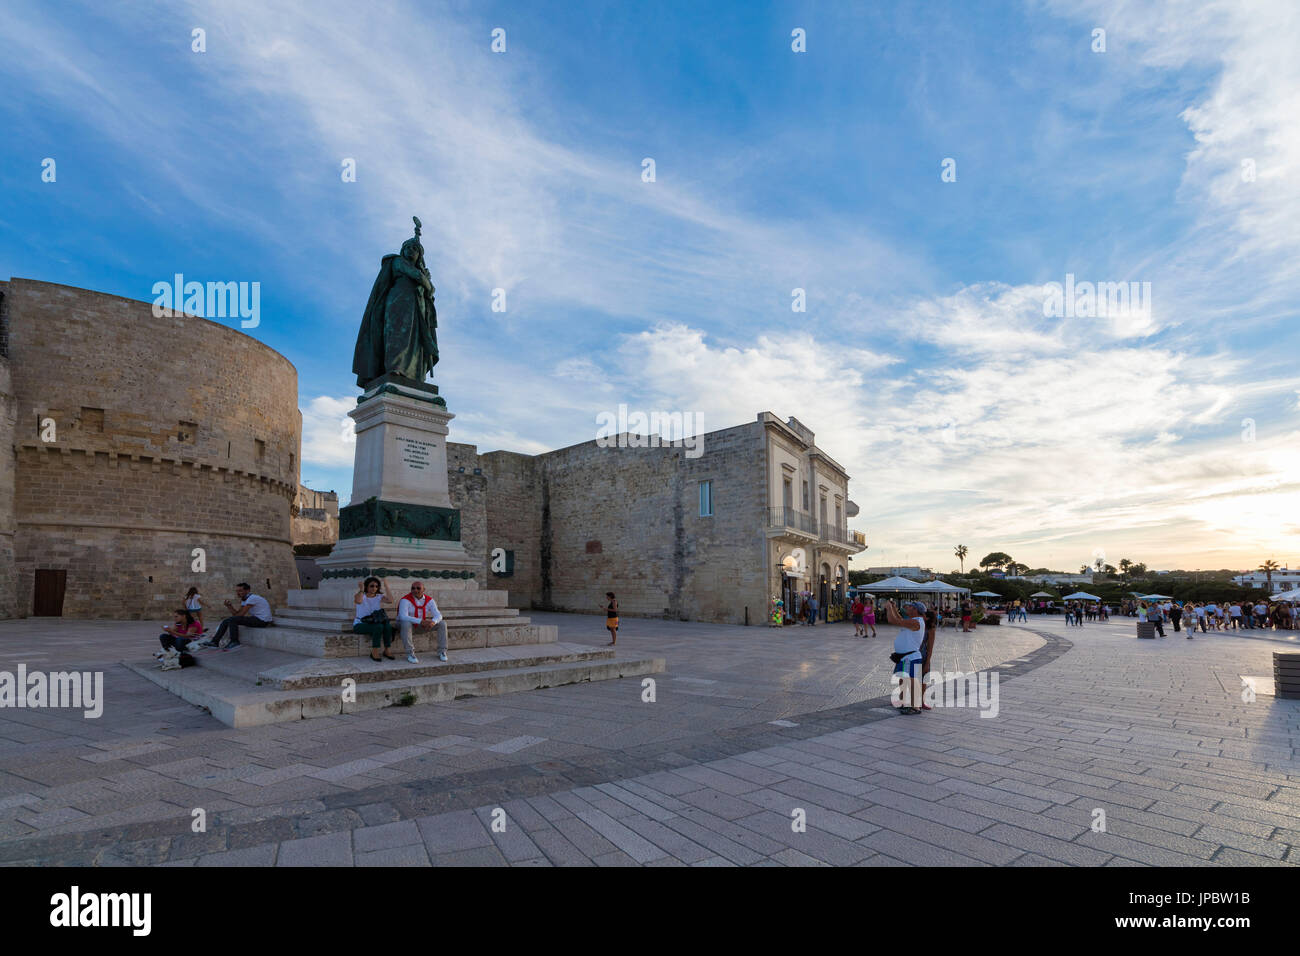 Alte mittelalterliche Festung und Denkmäler der alten Stadt Otranto Provinz von Lecce Apulien Italien Europa Stockfoto